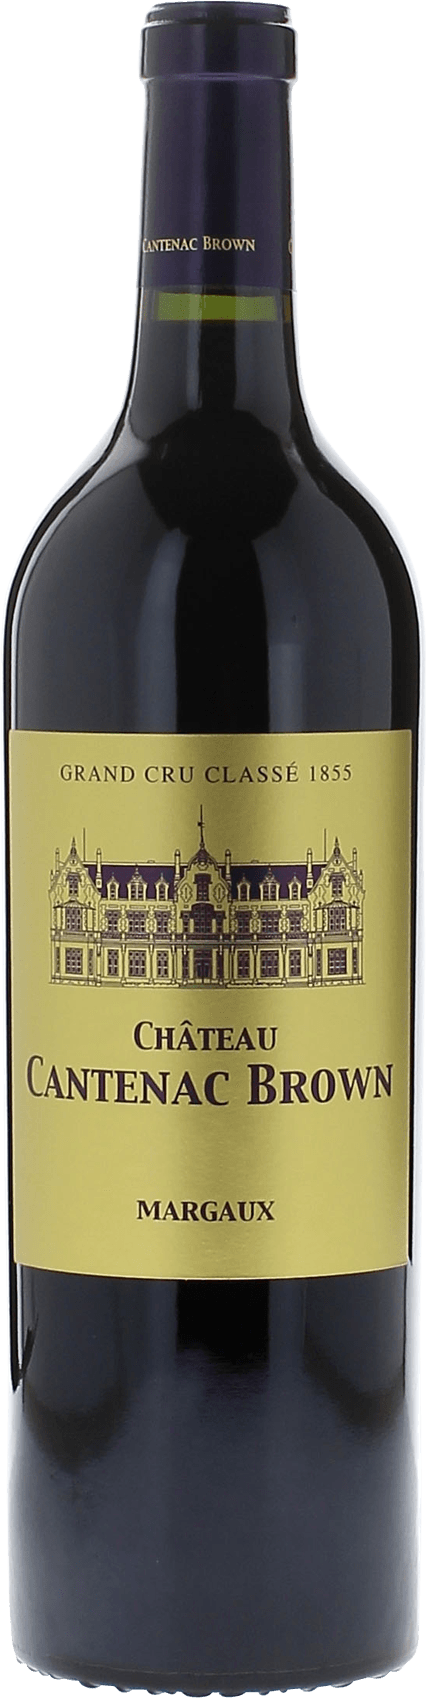 Cantenac brown 1989 2me Grand cru class Margaux, Bordeaux rouge